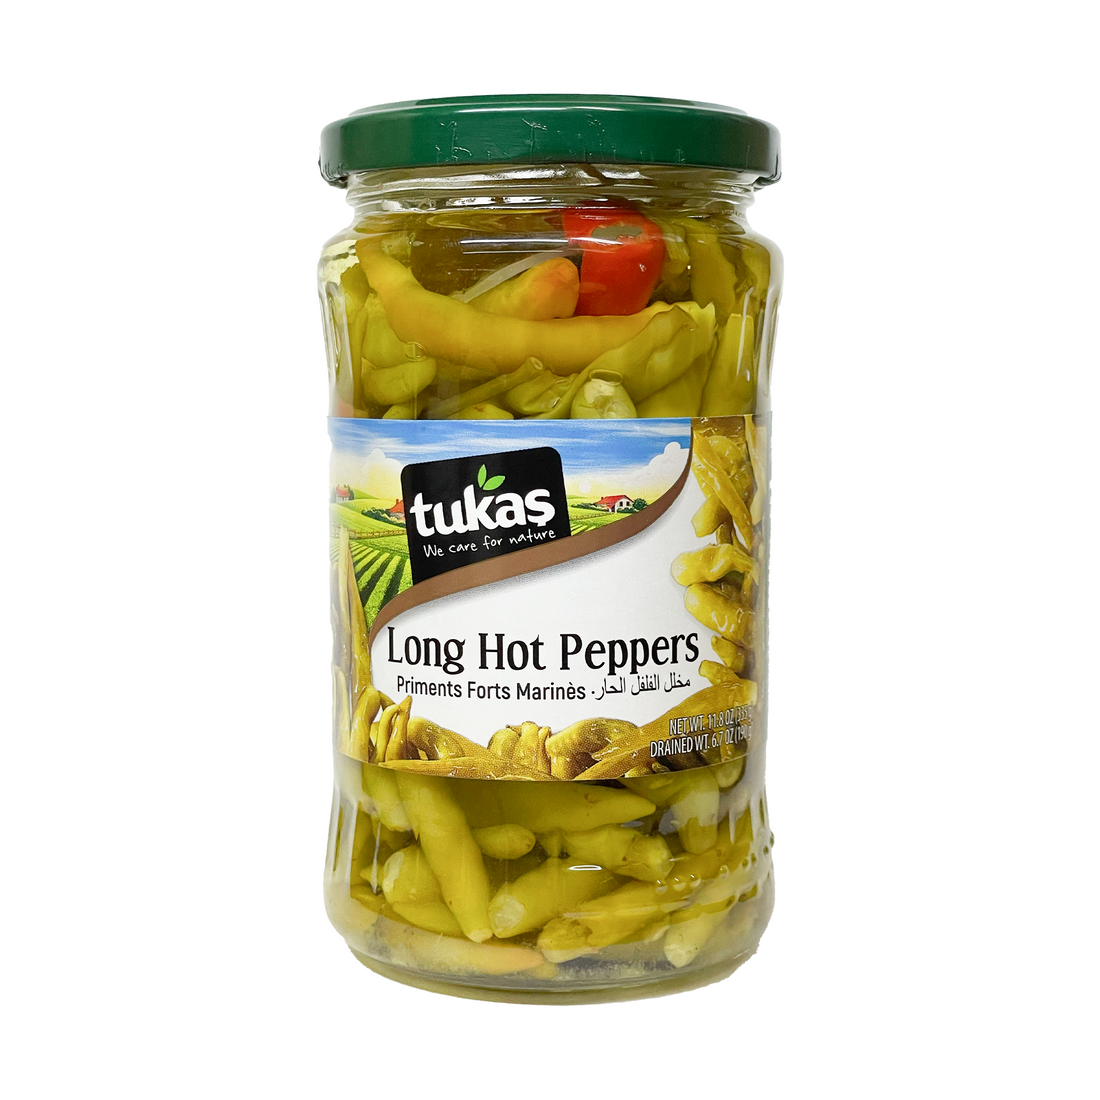 Tukas Pickled Long Hot Peppers 335g | Tukas Yakan Aci Biber Tursusu | Long Hot Peppers